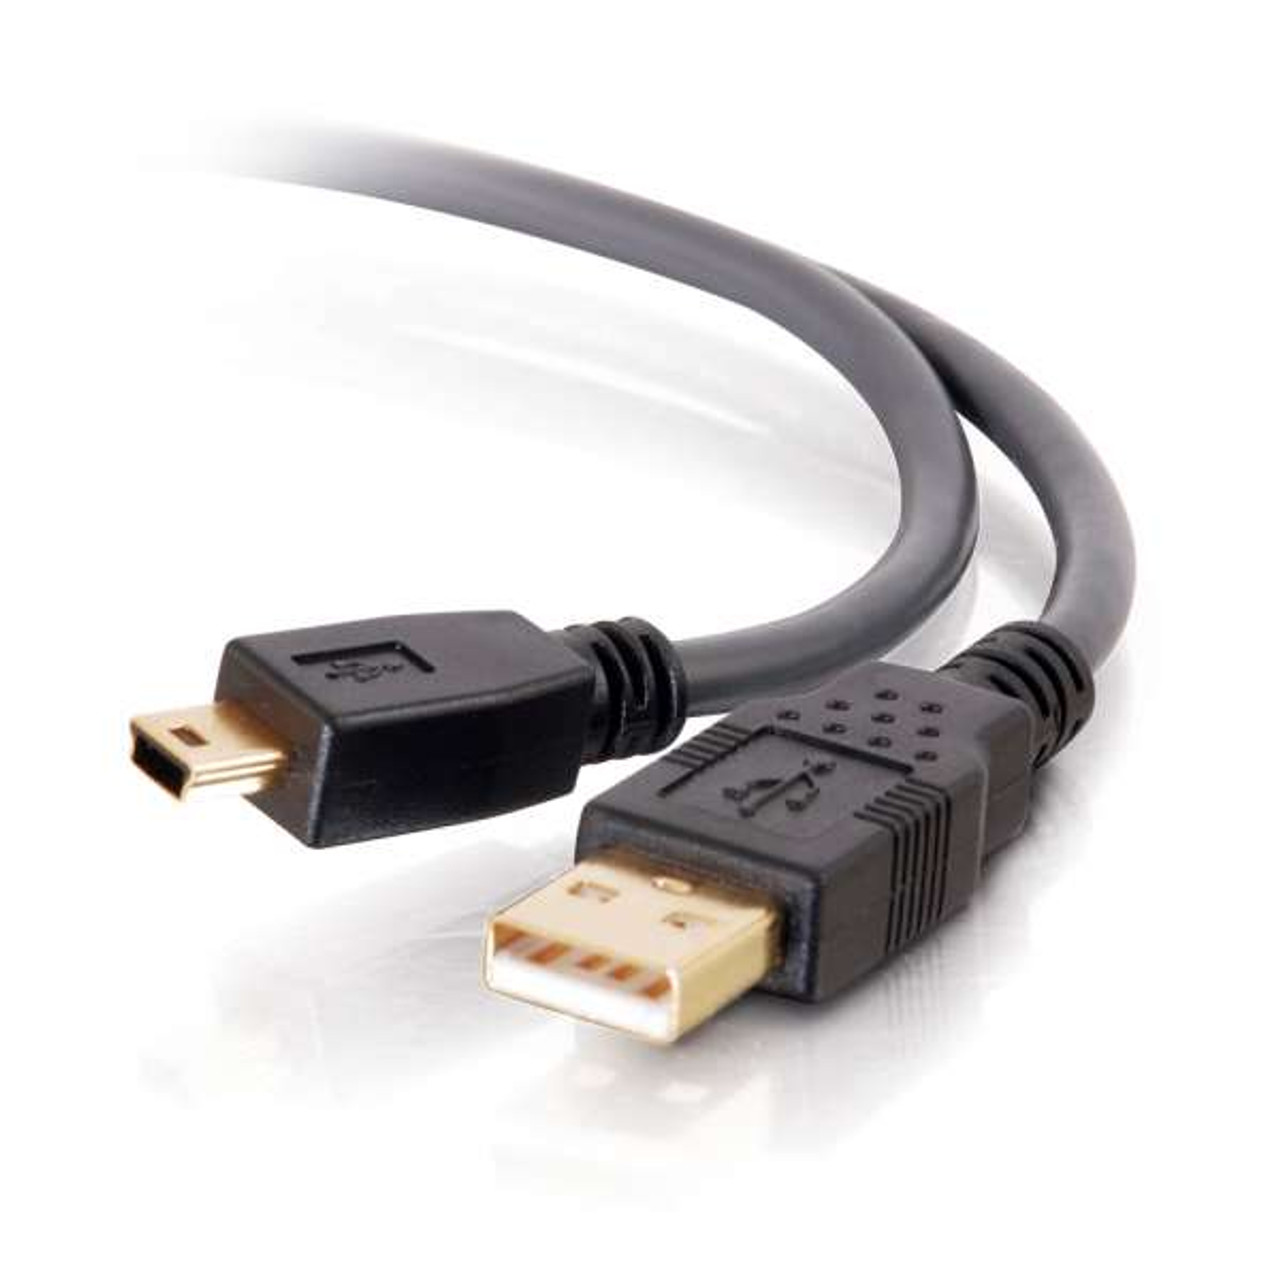 C2G 6.6ft USB A to USB B Cable - USB A to B Cable - USB 2.0 - Black - M/M -  28102 - USB Cables 